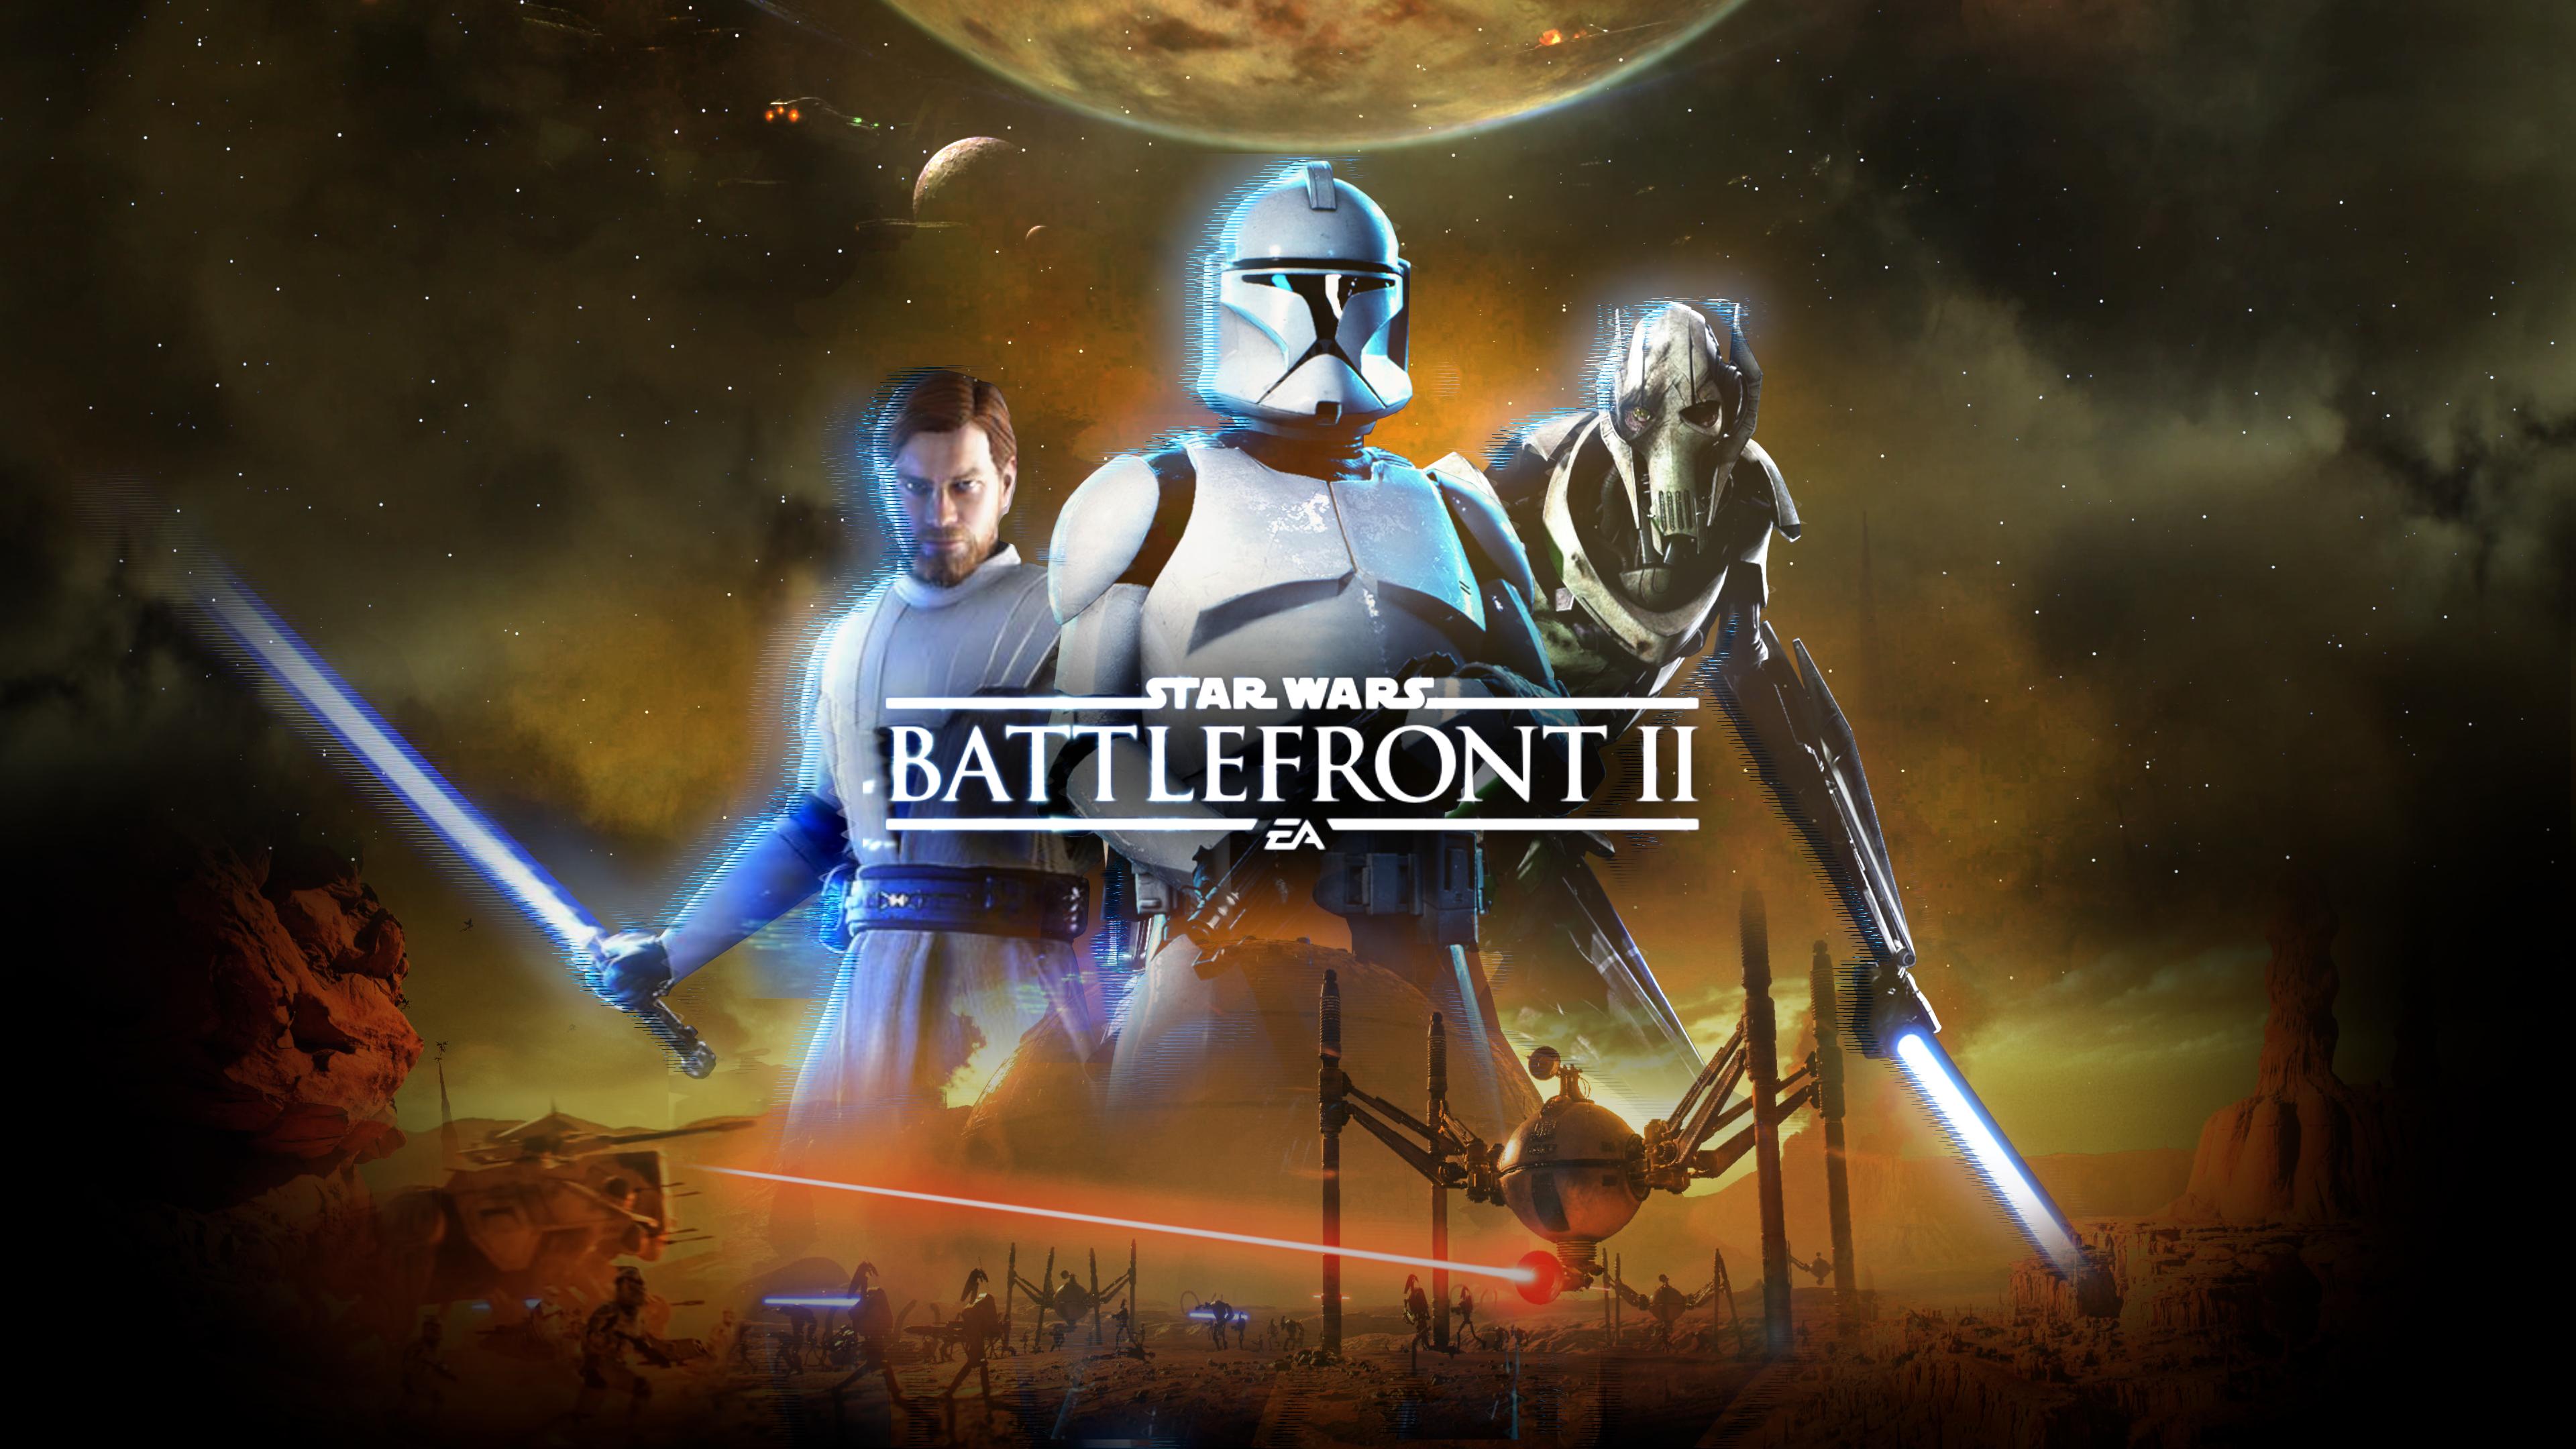 Star wars battlefront 2 download link pc